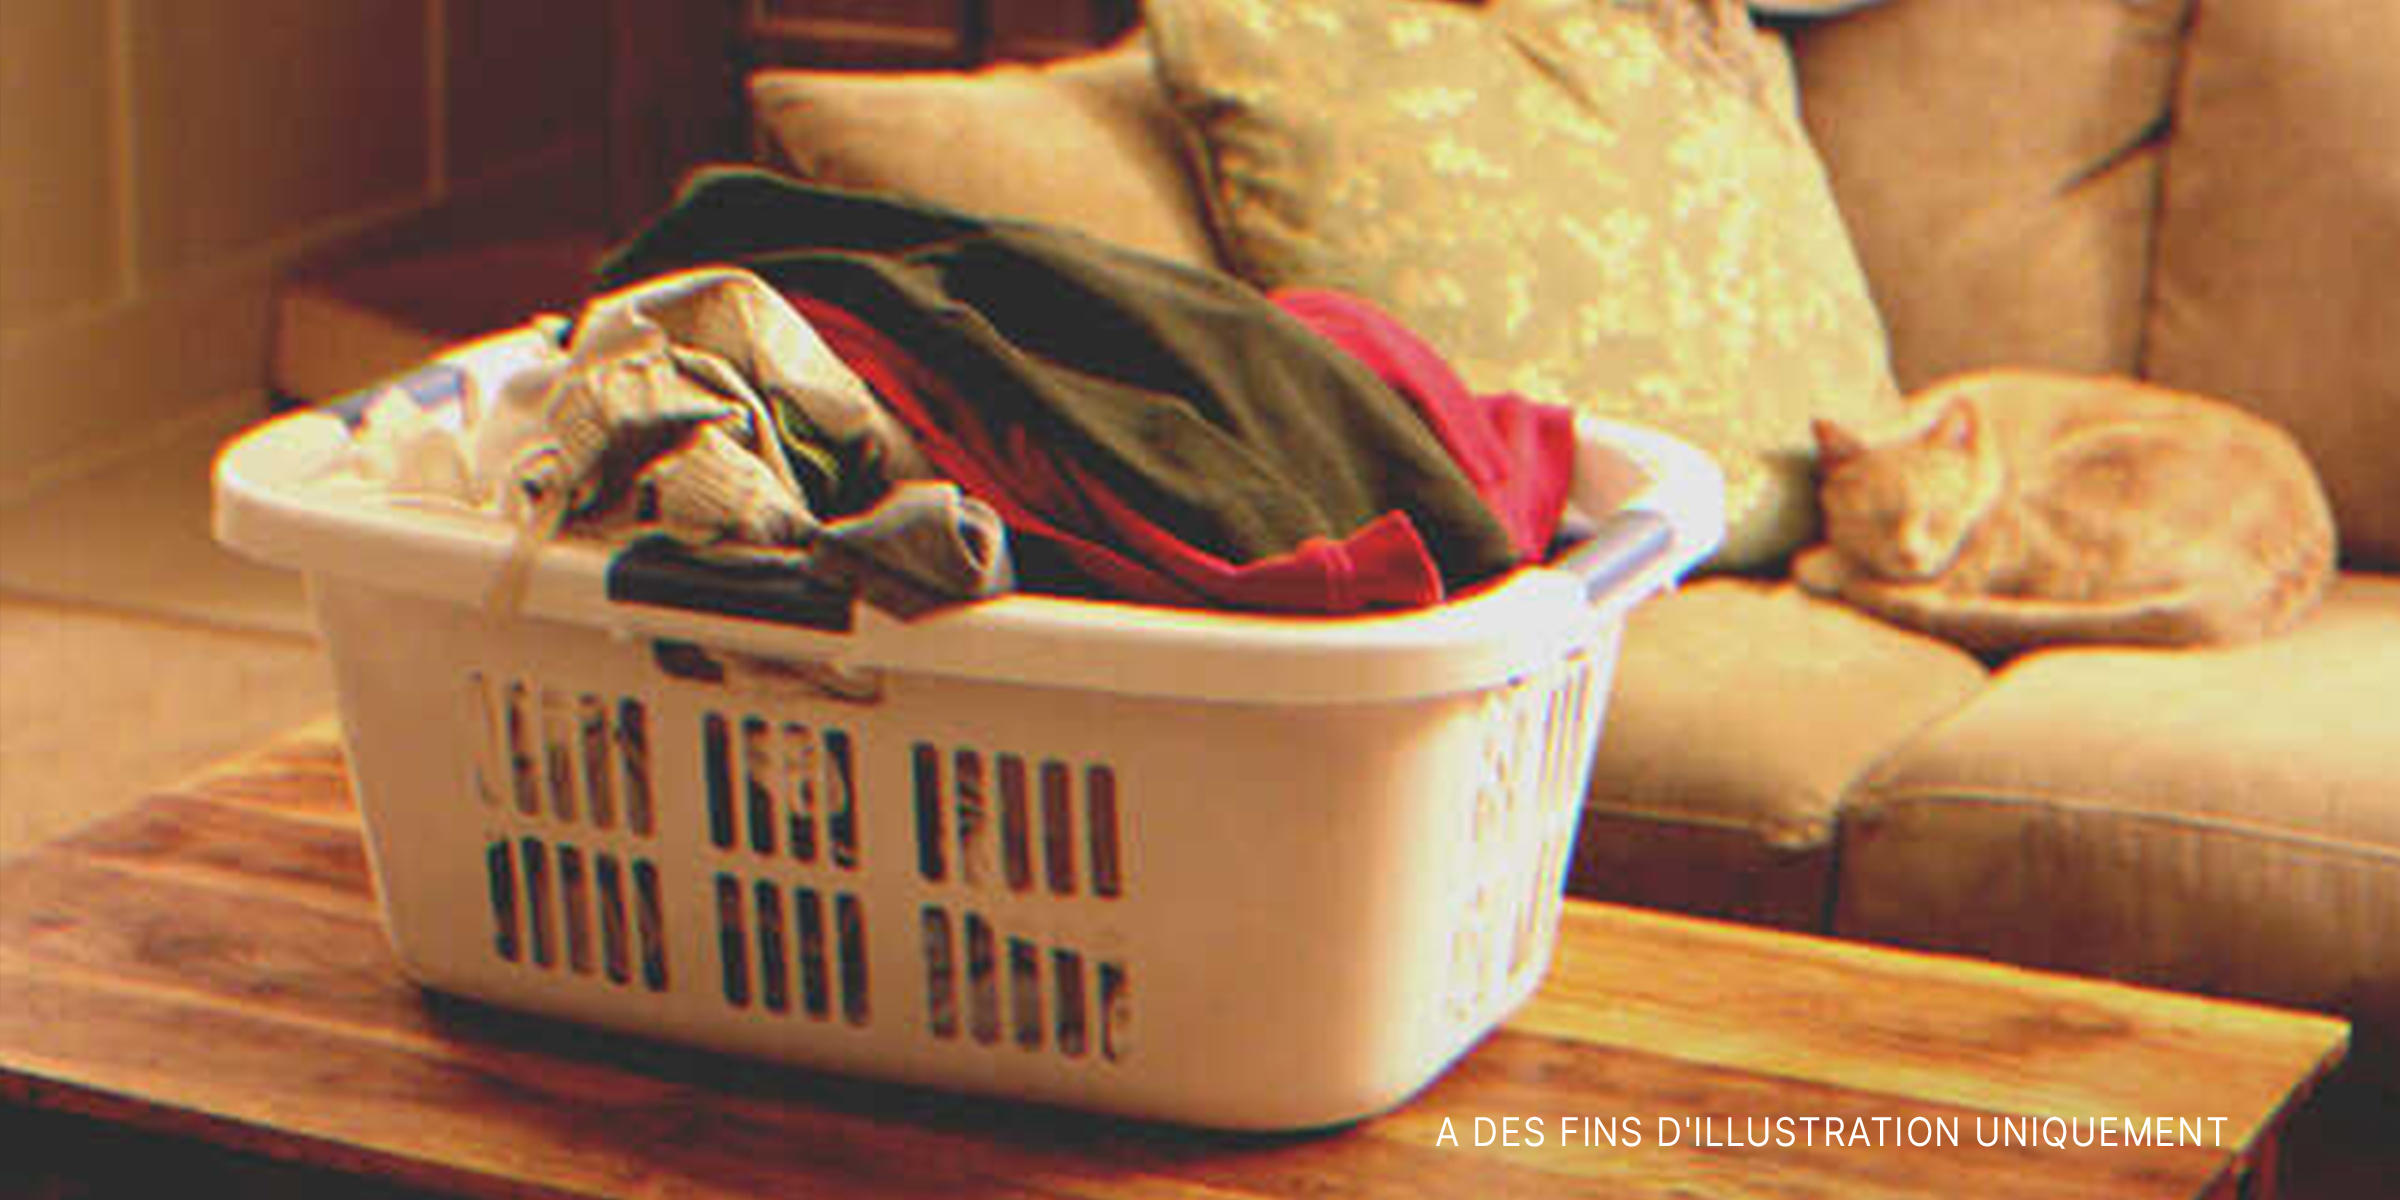 Un bac à linge rempli de vêtements posé sur une table | Source : Flickr/Sean Freese